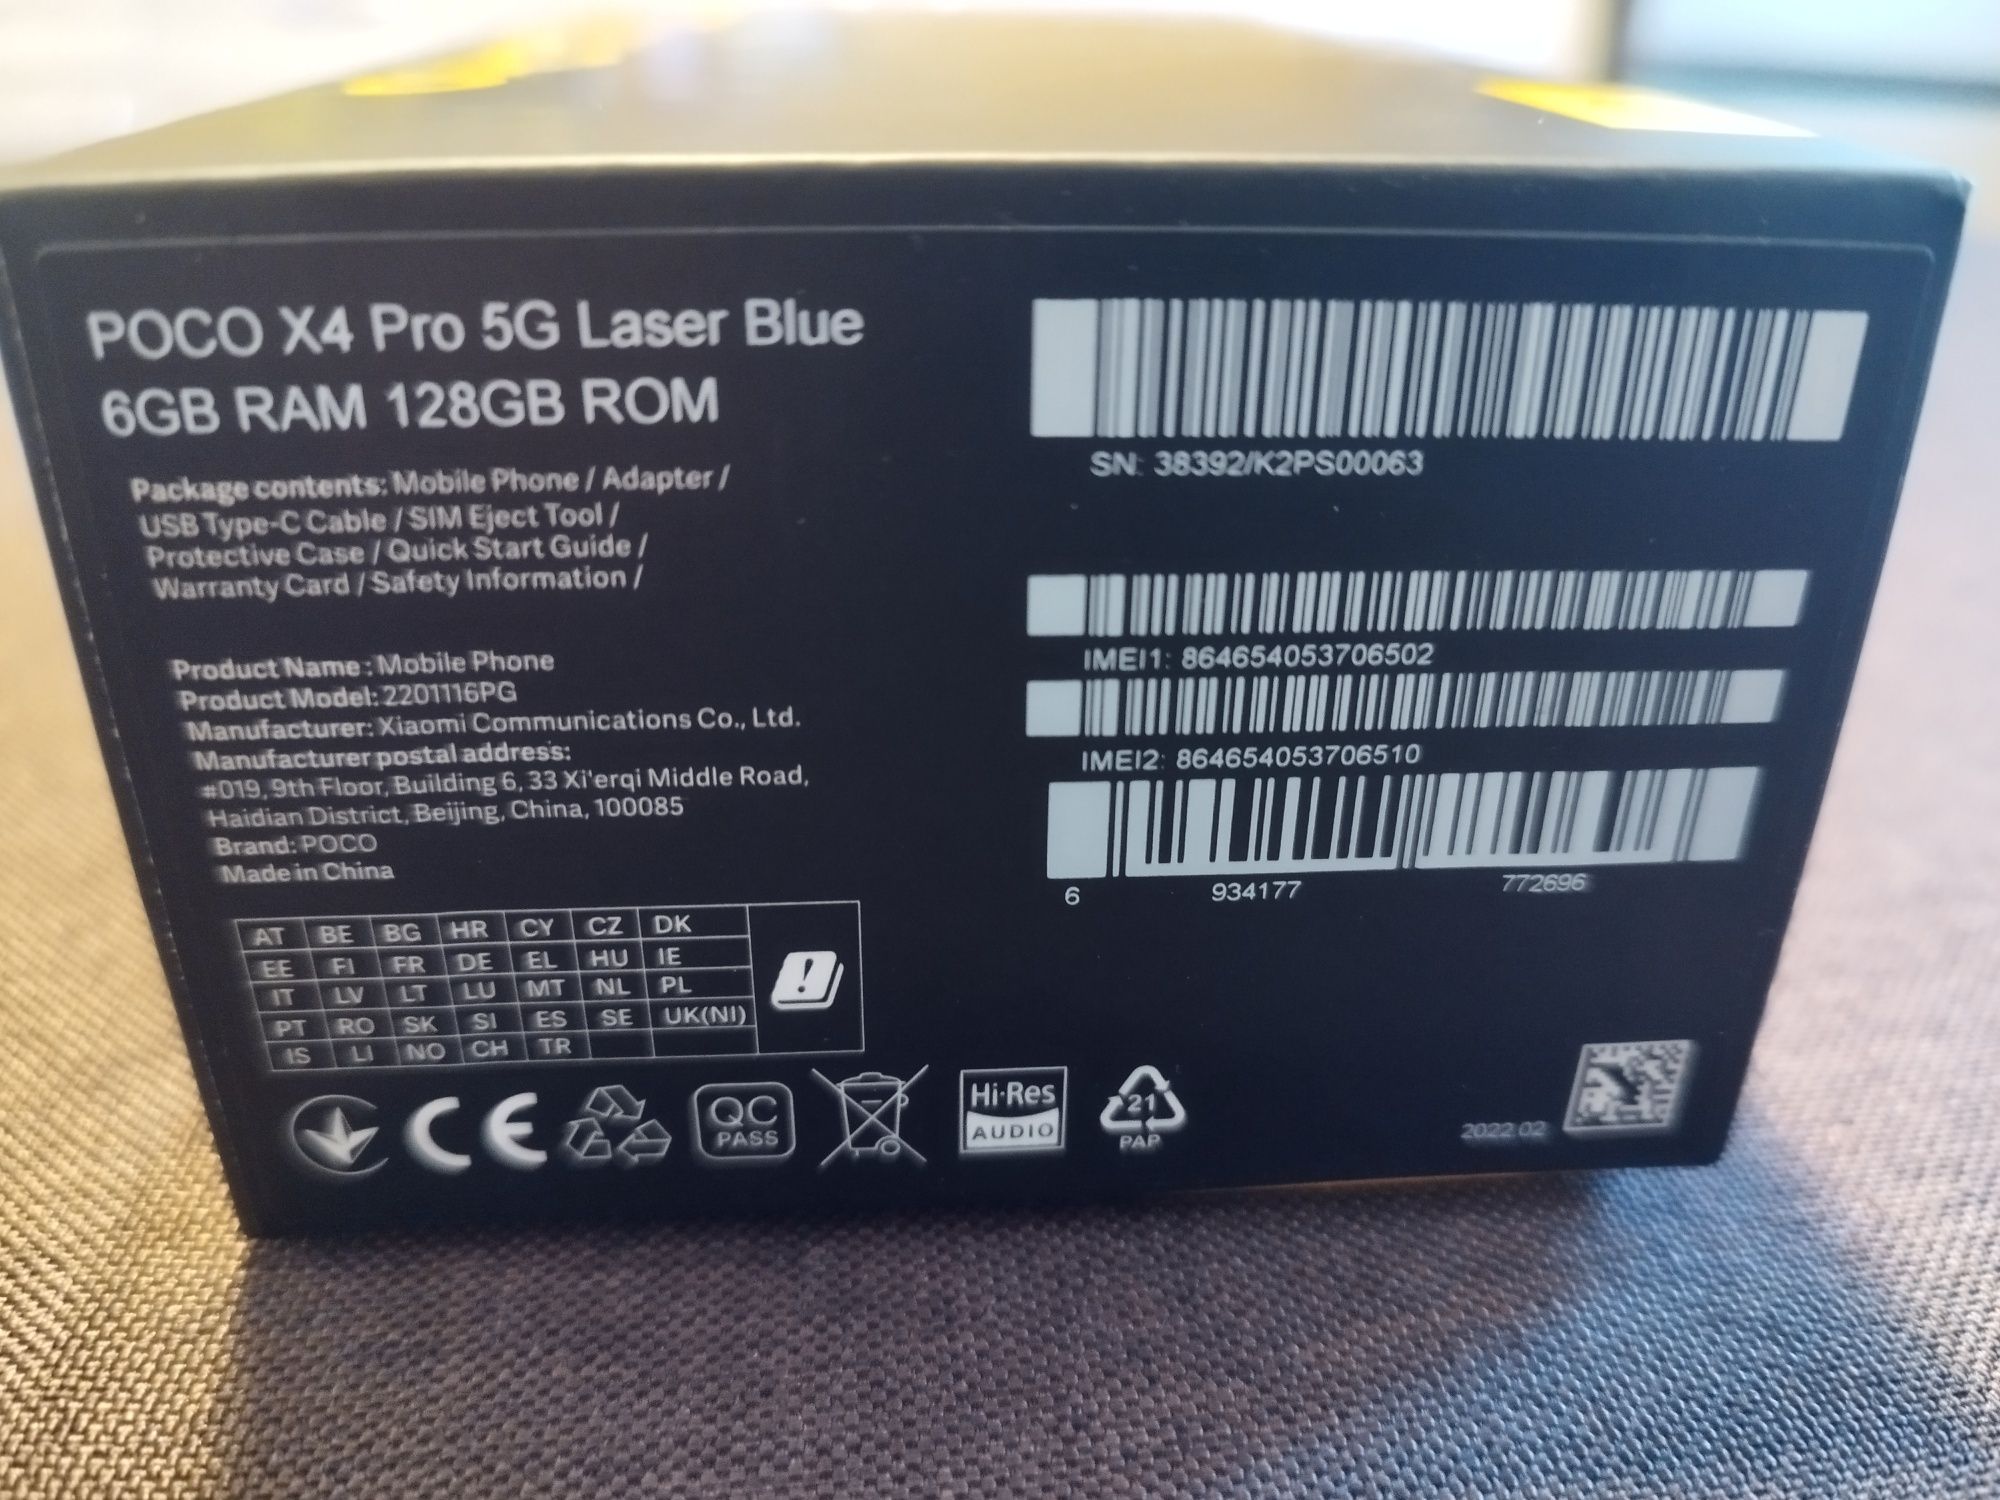 POCO X4 Pro 5g Laser Blue